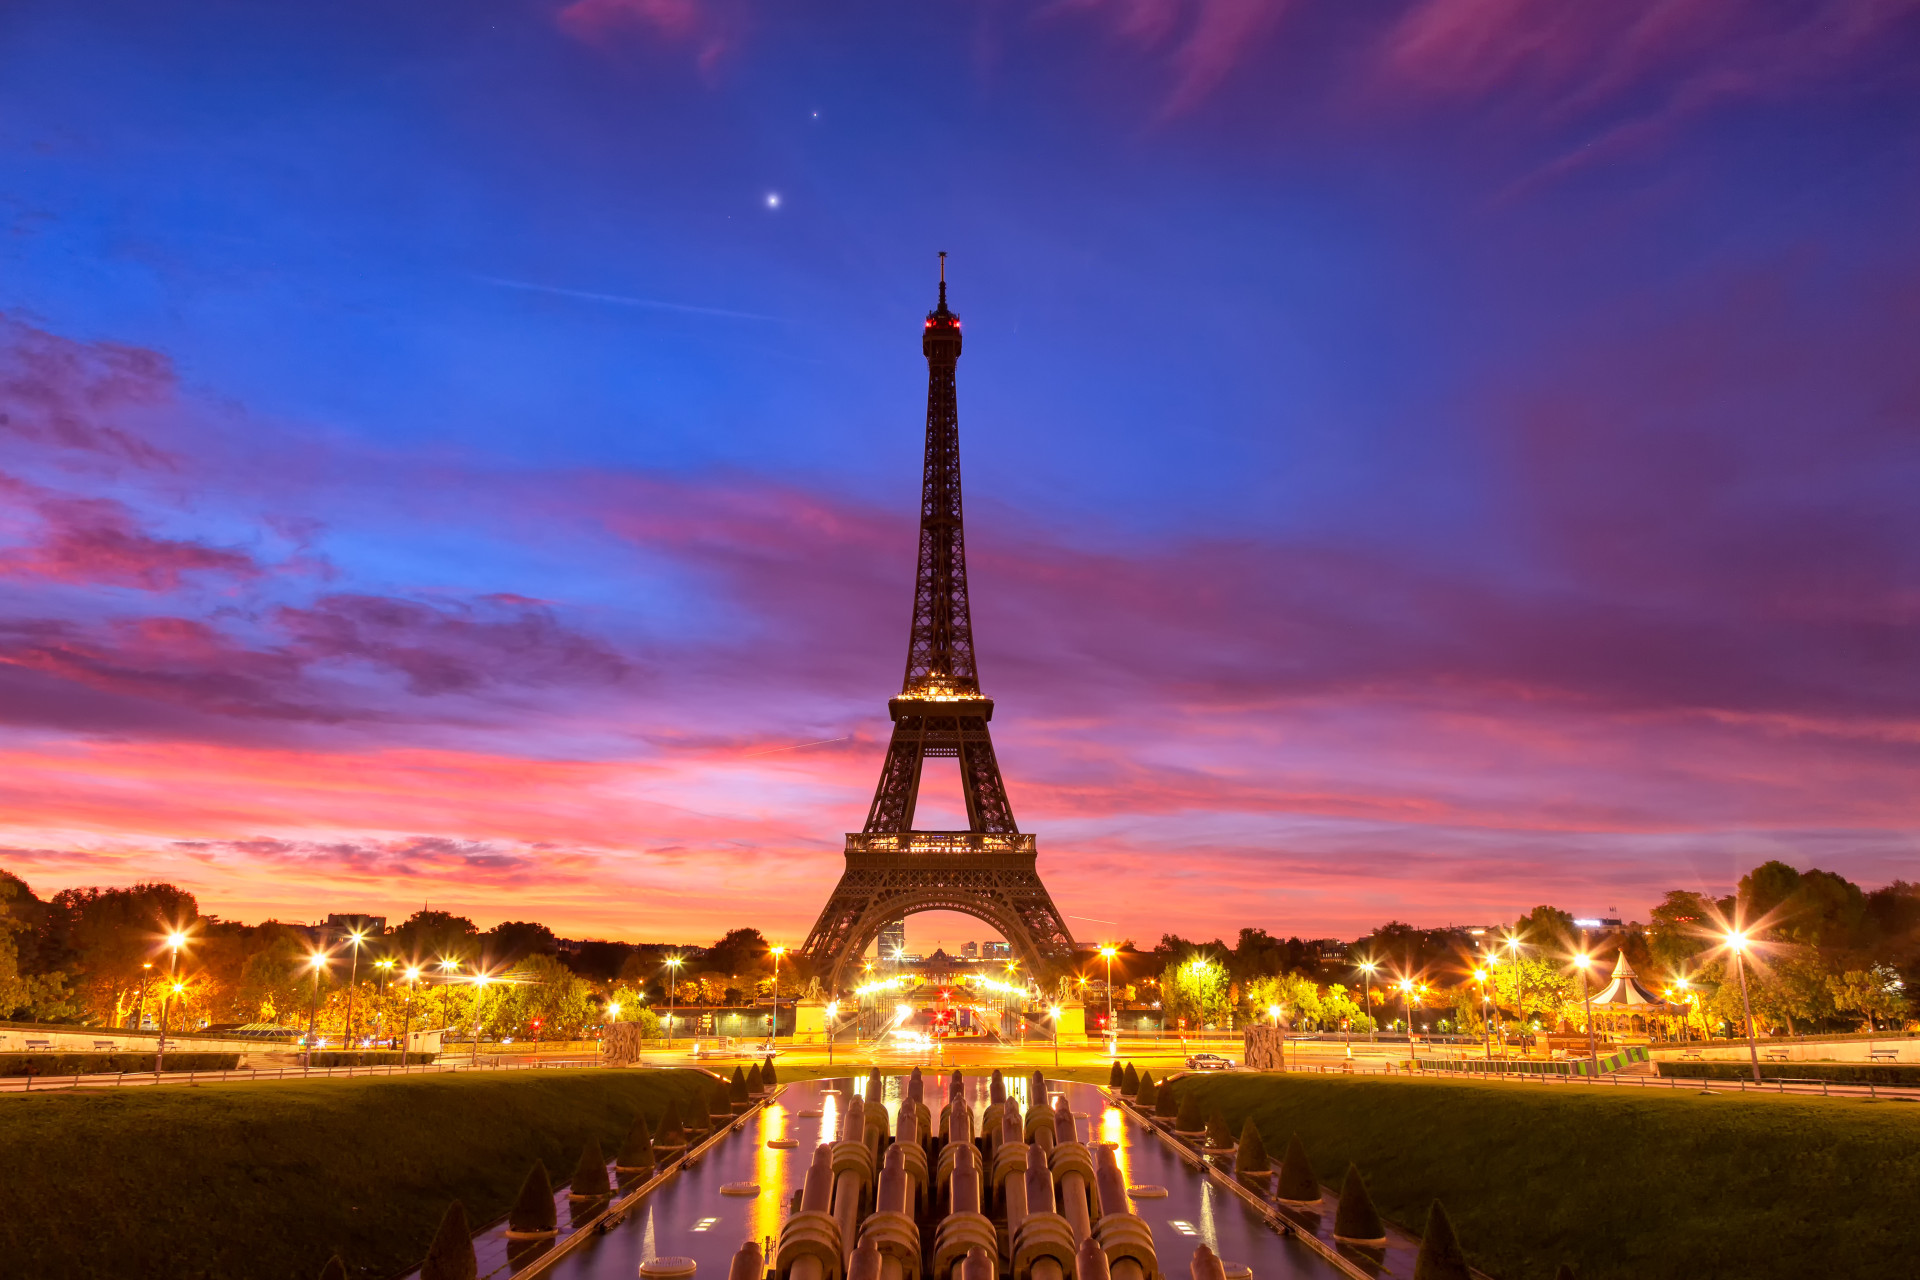 Terminée en 1889 pour l'Exposition Internationale, ce chef d'œuvre architectural situé à Paris est l'un des monuments les plus célèbres au monde.<p><a href="https://www.msn.com/fr-fr/community/channel/vid-7xx8mnucu55yw63we9va2gwr7uihbxwc68fxqp25x6tg4ftibpra?cvid=94631541bc0f4f89bfd59158d696ad7e">Suivez-nous et accédez tous les jours à du contenu exclusif</a></p>